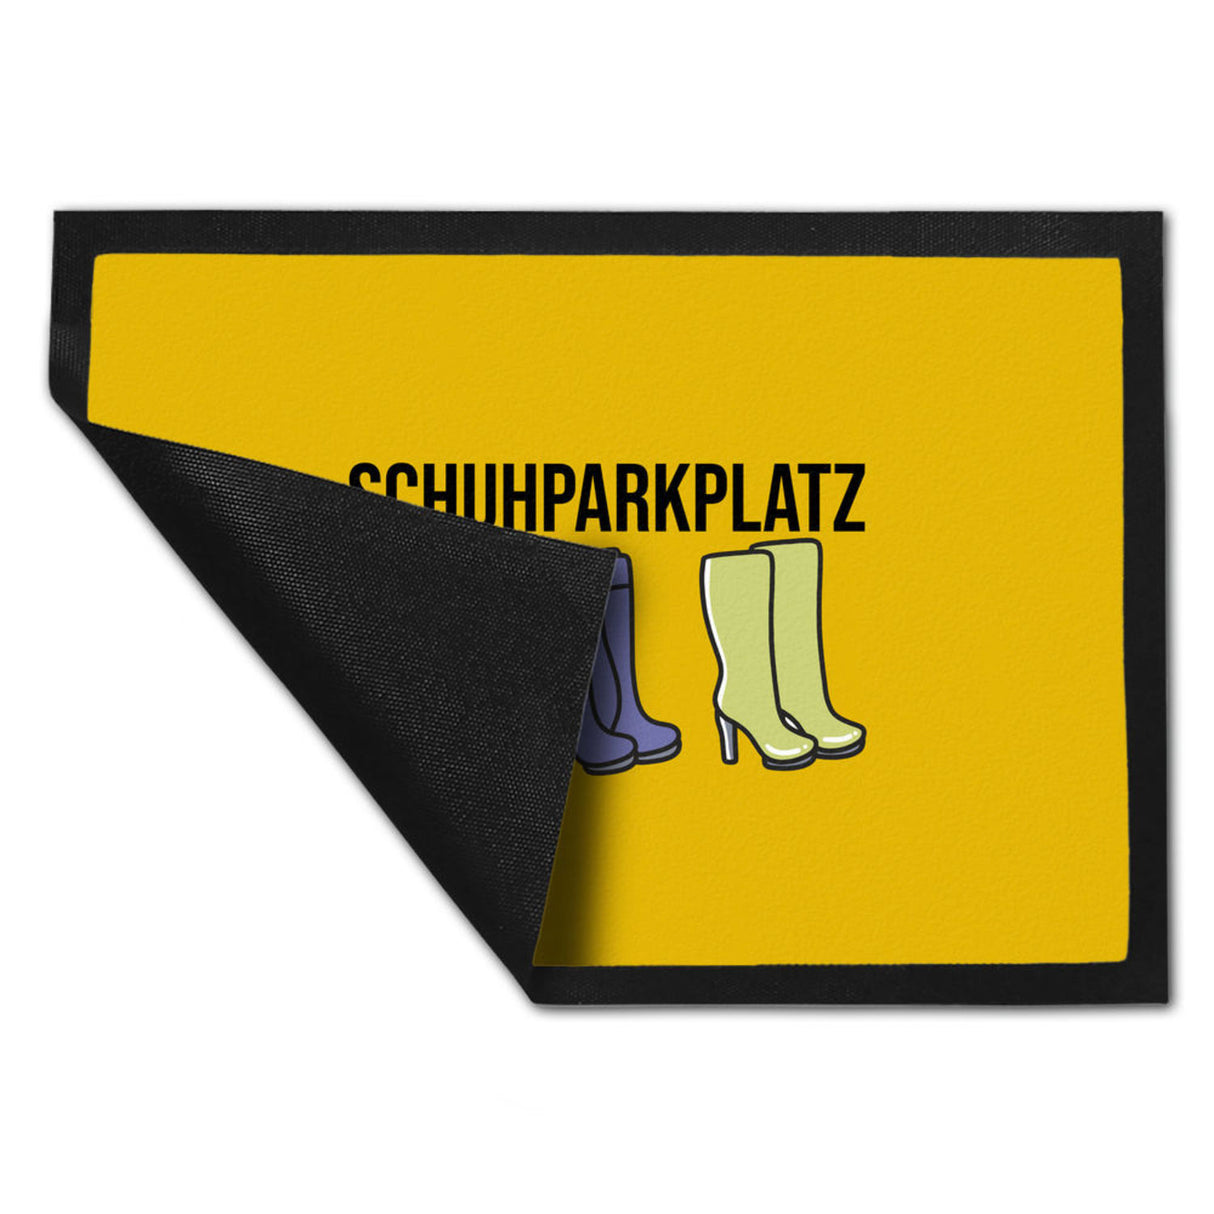 Fußmatte Schuhparkplatz beige 40x120 cm